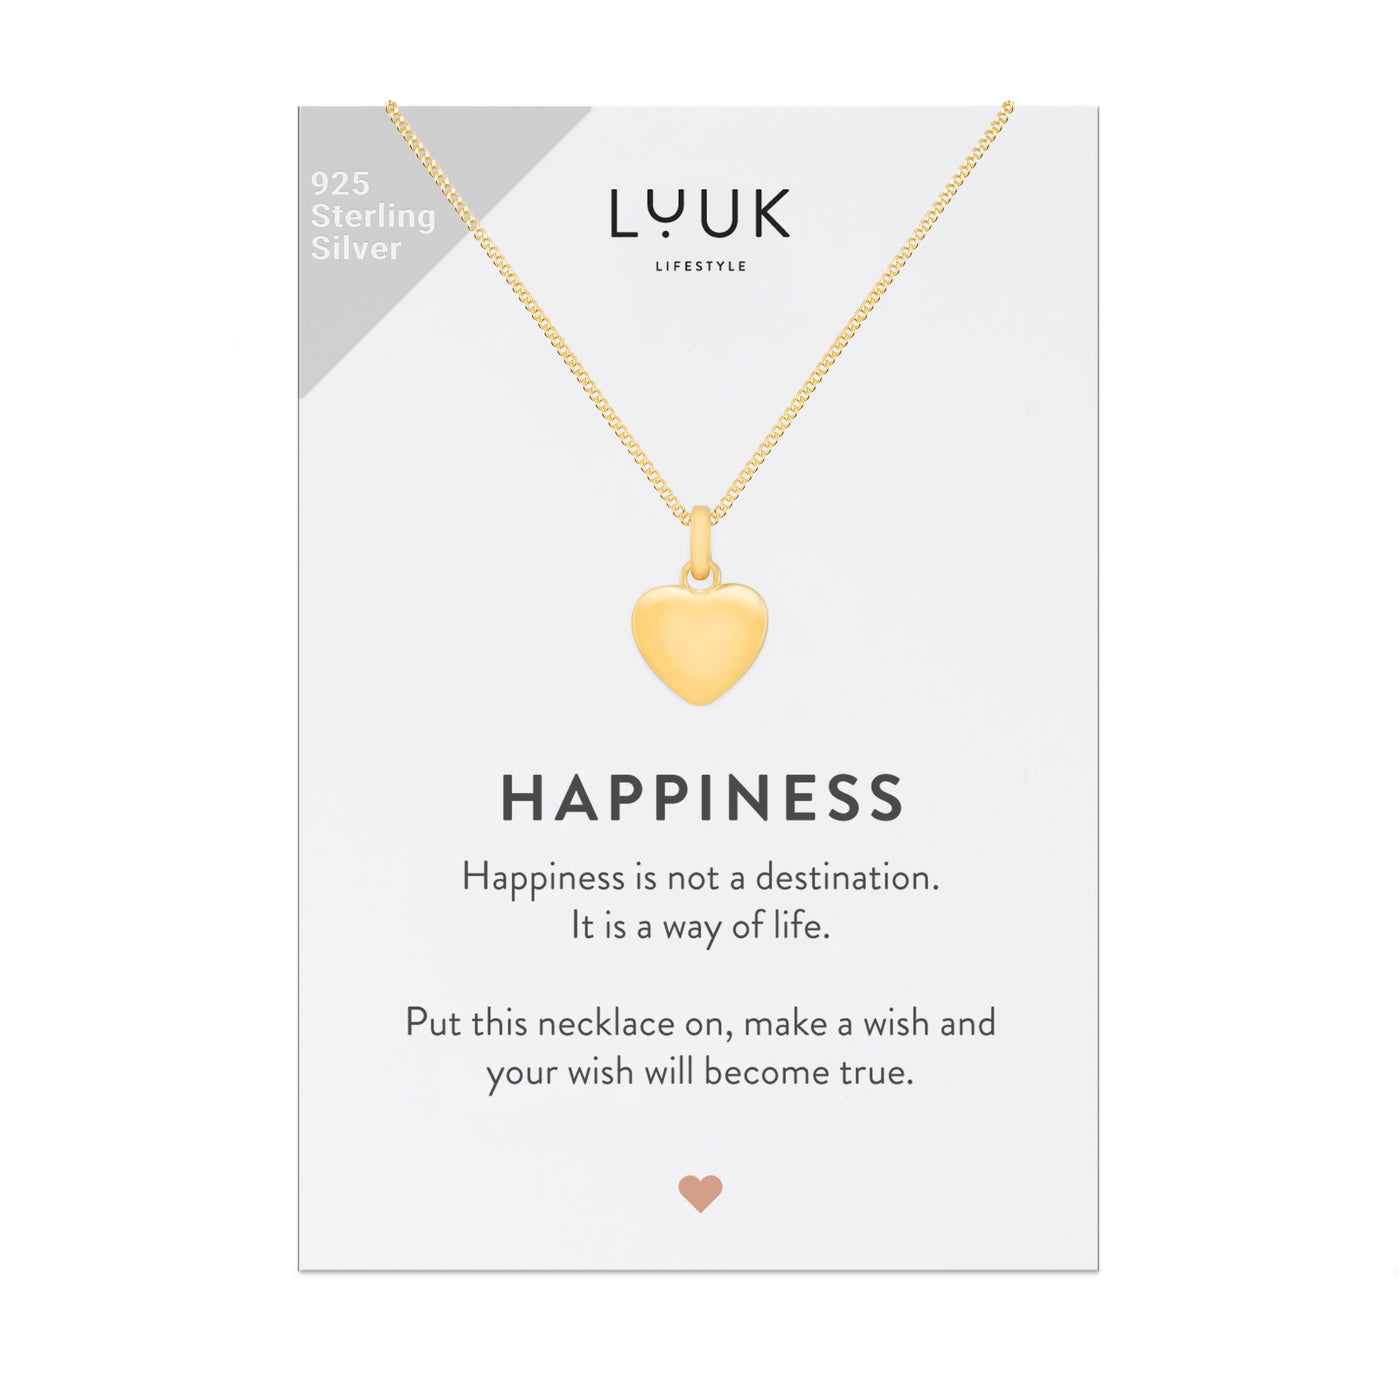 Gold Kette mit Herz Anhänger aus 925 Sterlingsilber auf Happiness Spruchkarte von der Brand Luuk Lifestyle 